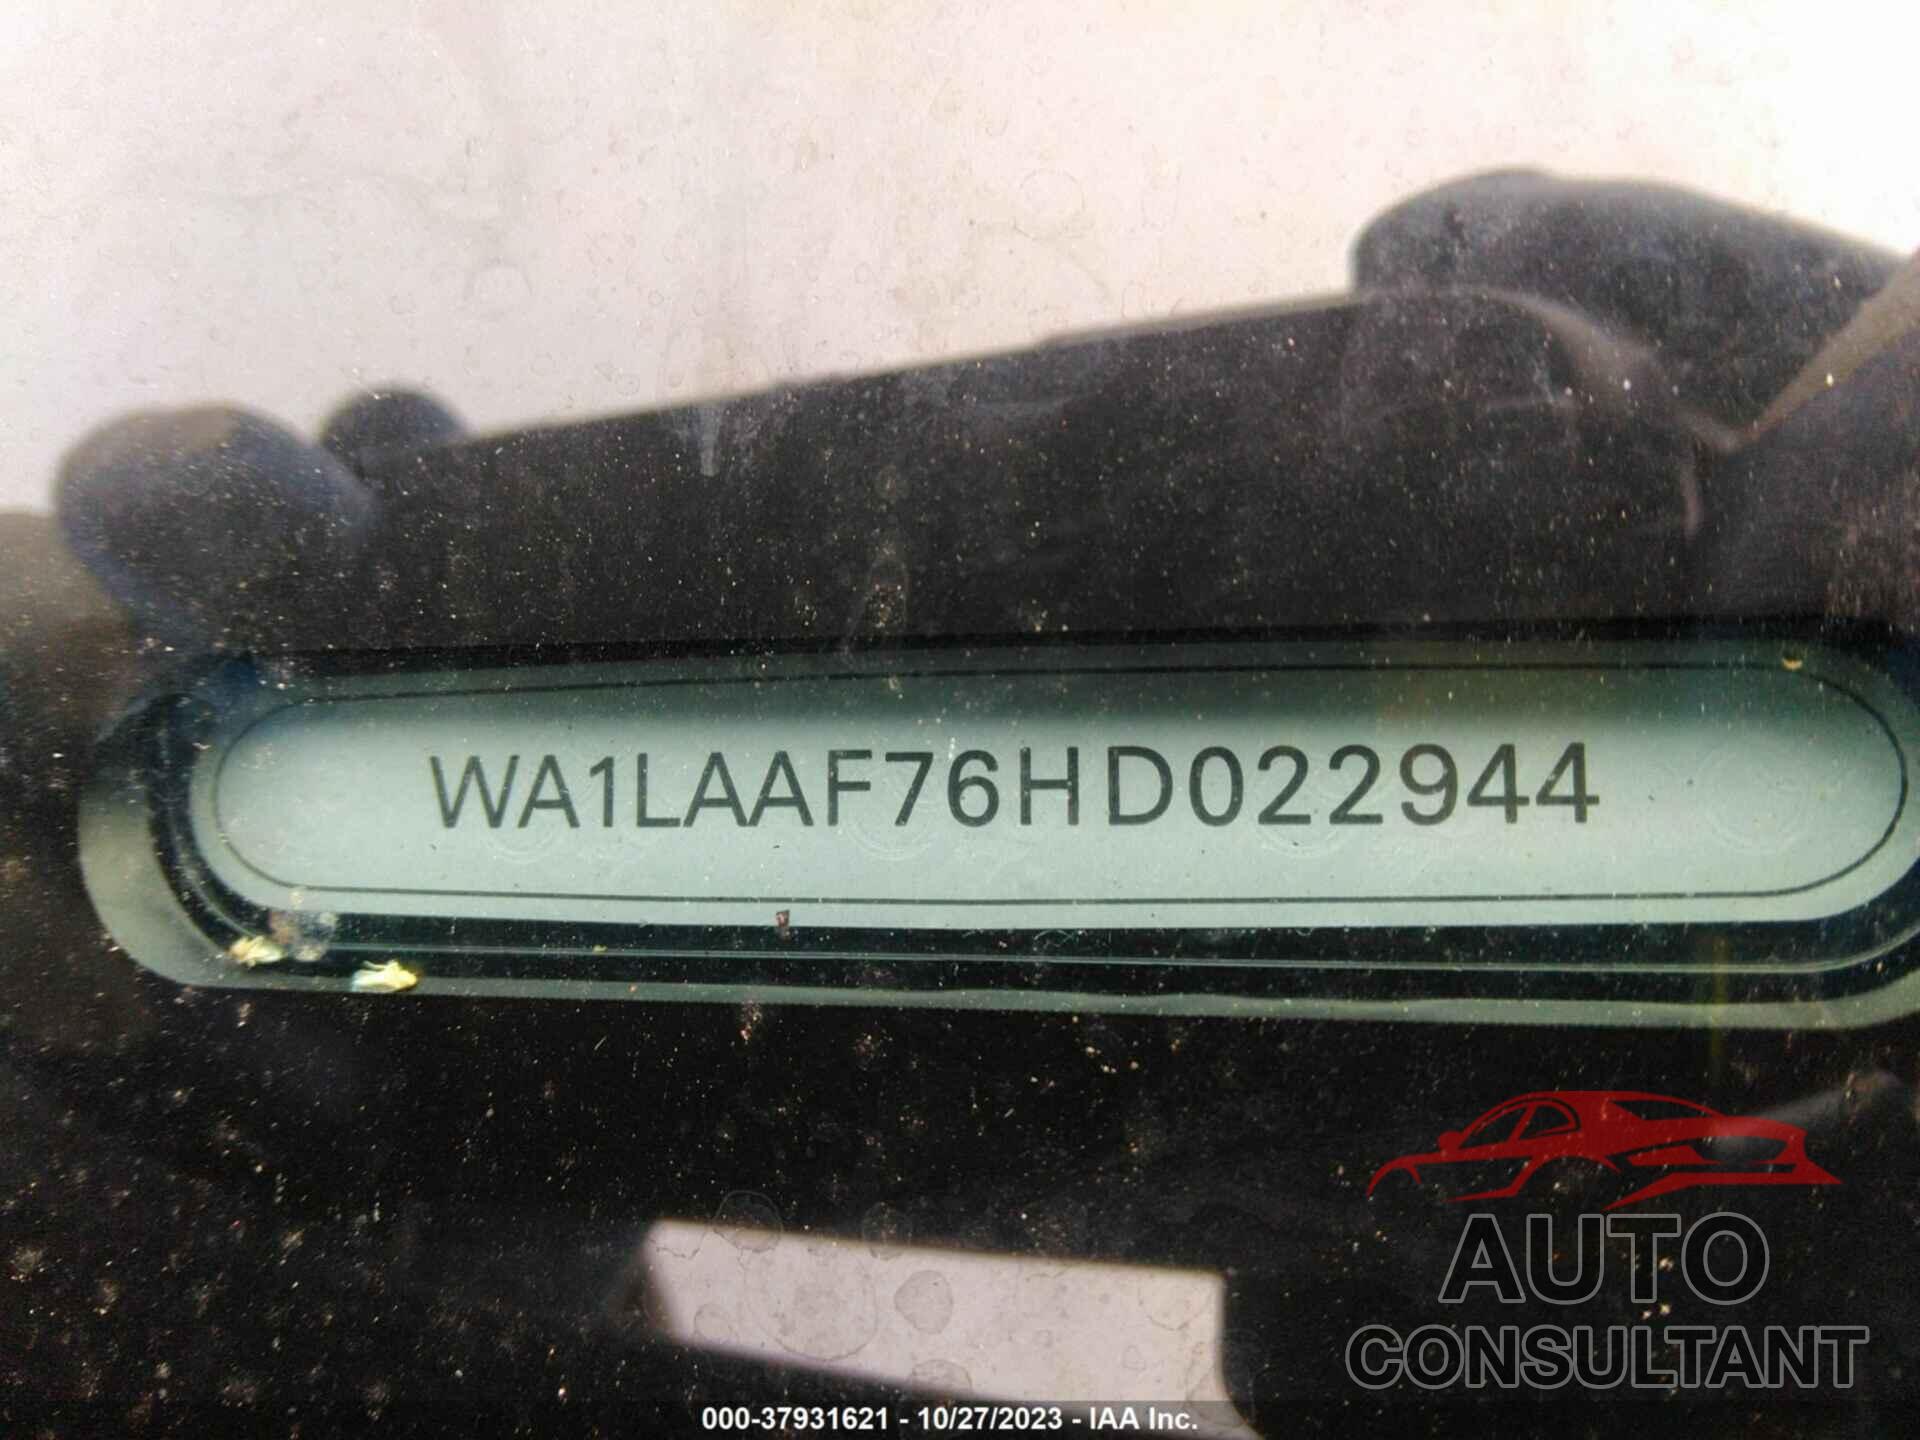 AUDI Q7 2017 - WA1LAAF76HD022944